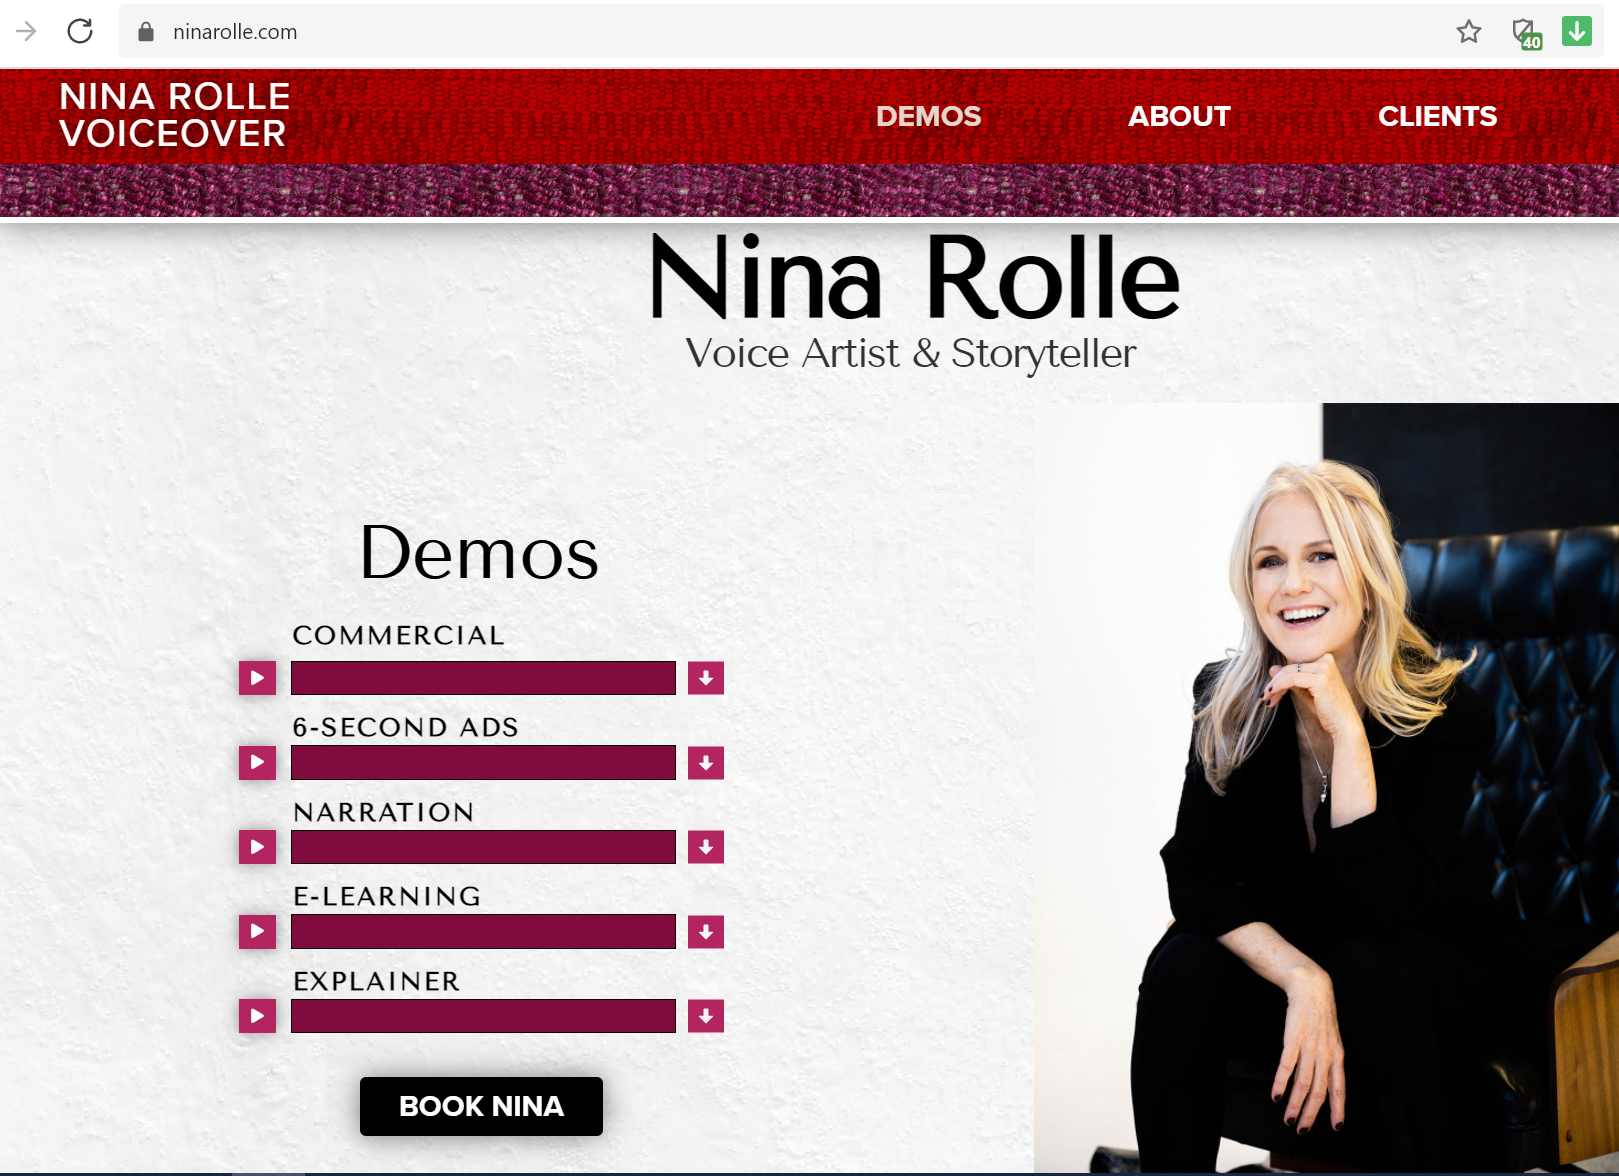 Who is Nina Rolle - Amazon Alexa's Voice